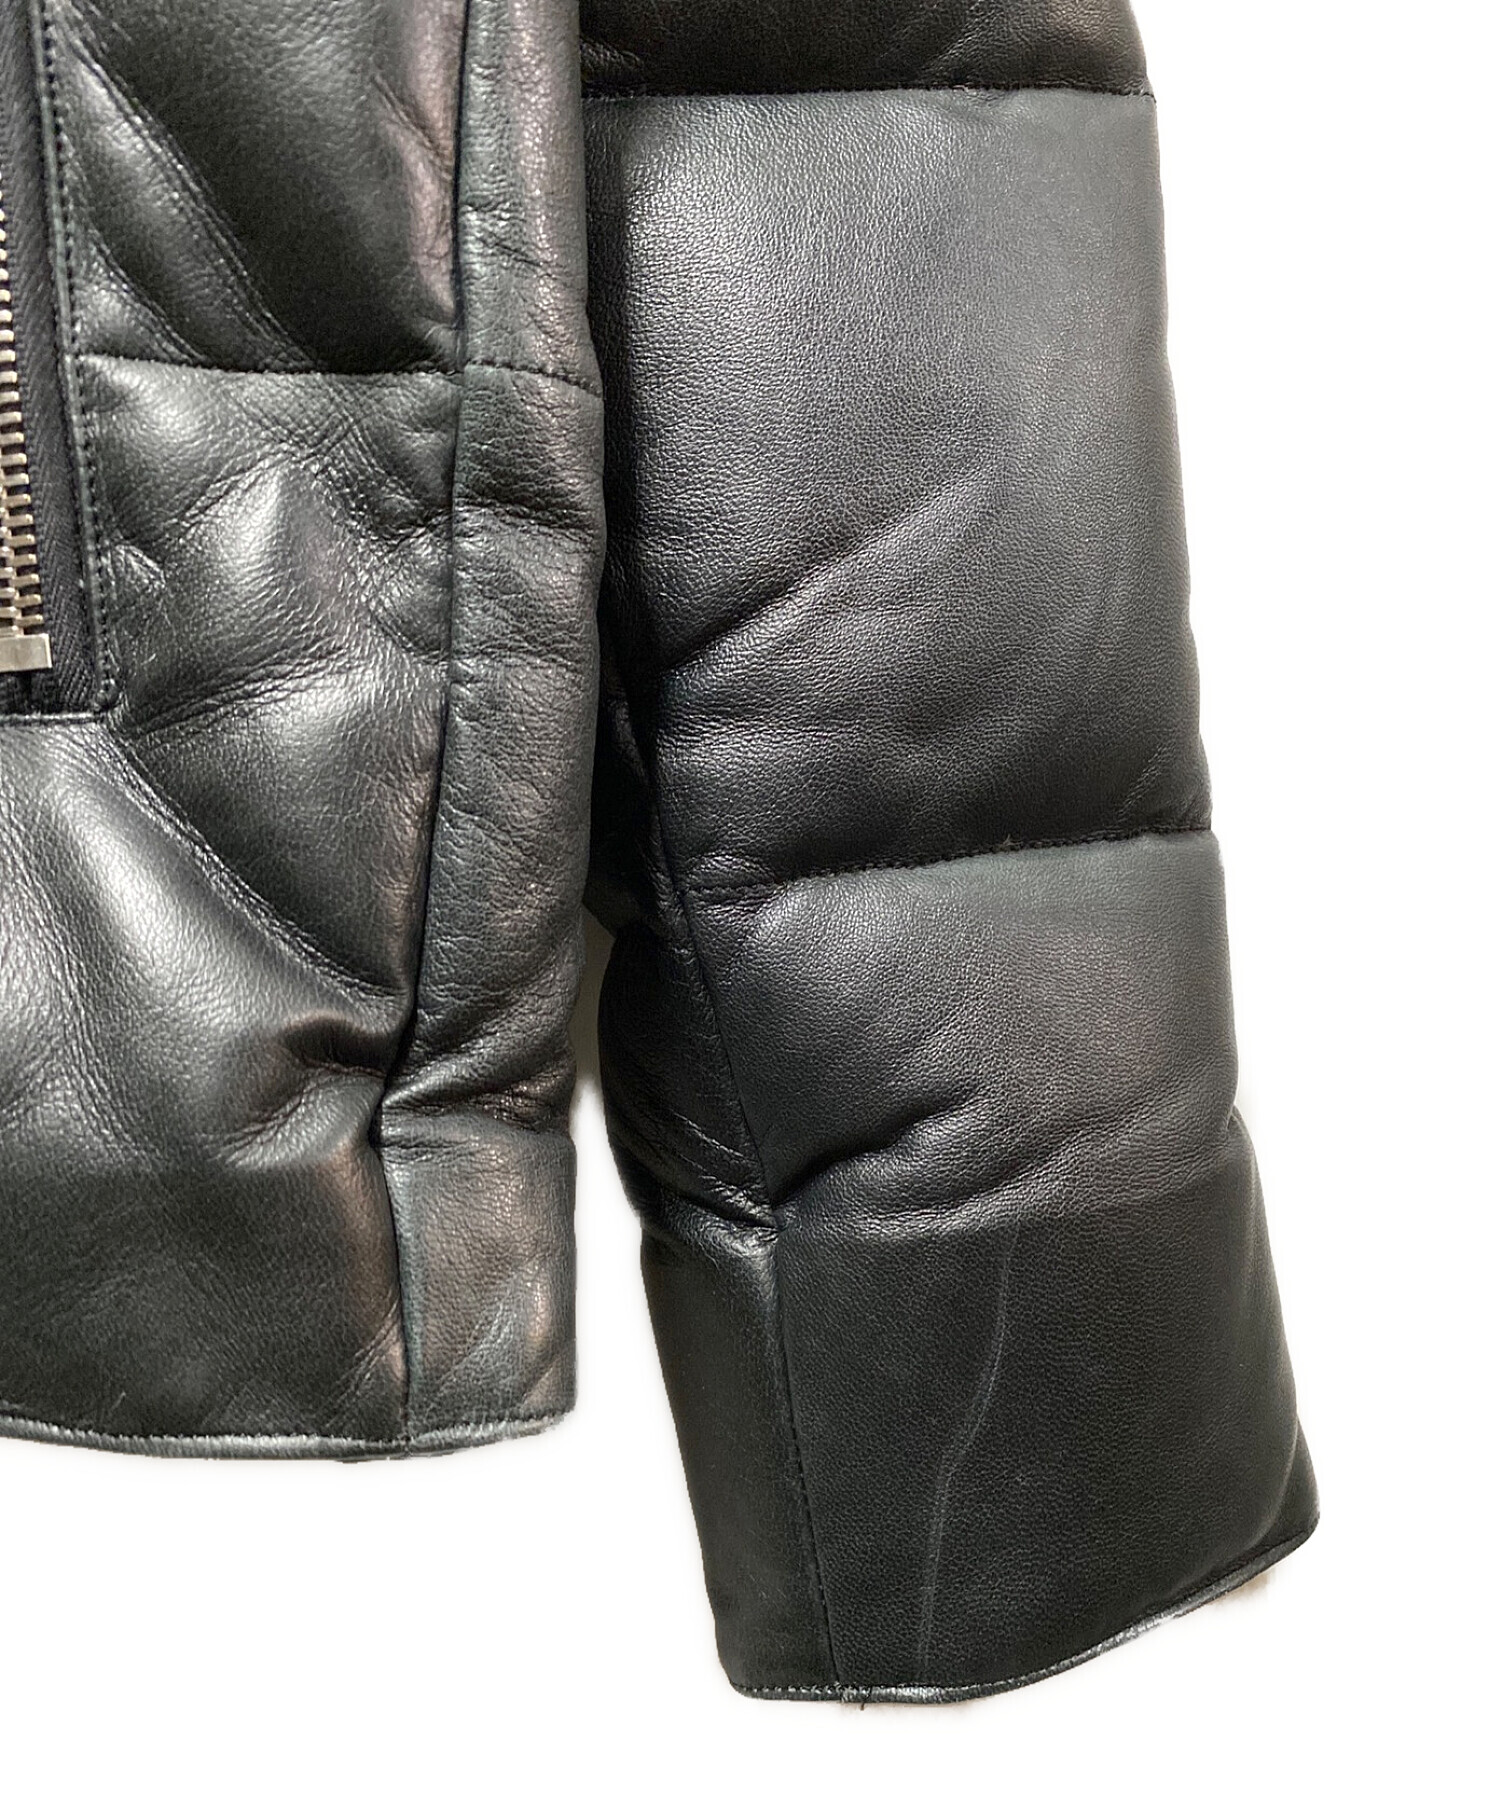 wjk (ダブルジェイケー) スキーレザーダウンジャケット ブラック サイズ:XL